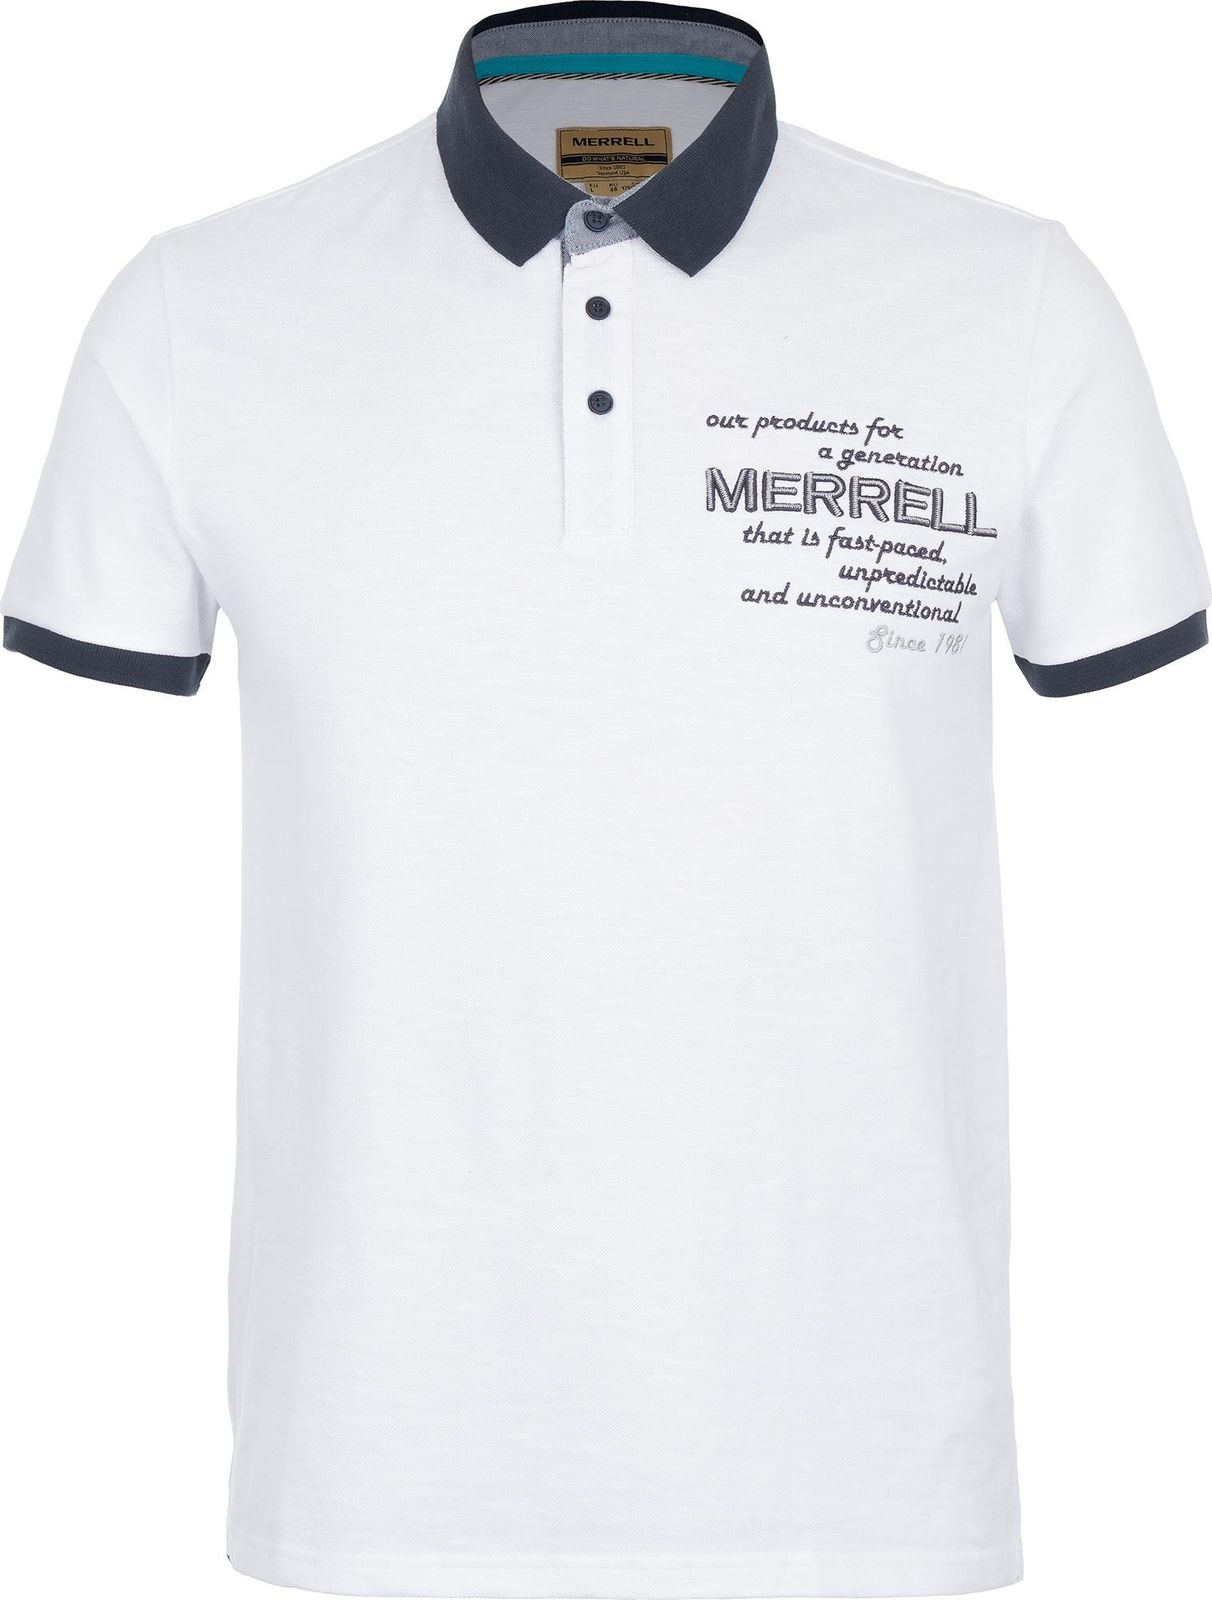   Merrell Men's Polo, : . S17AMRPOM01-00.  54